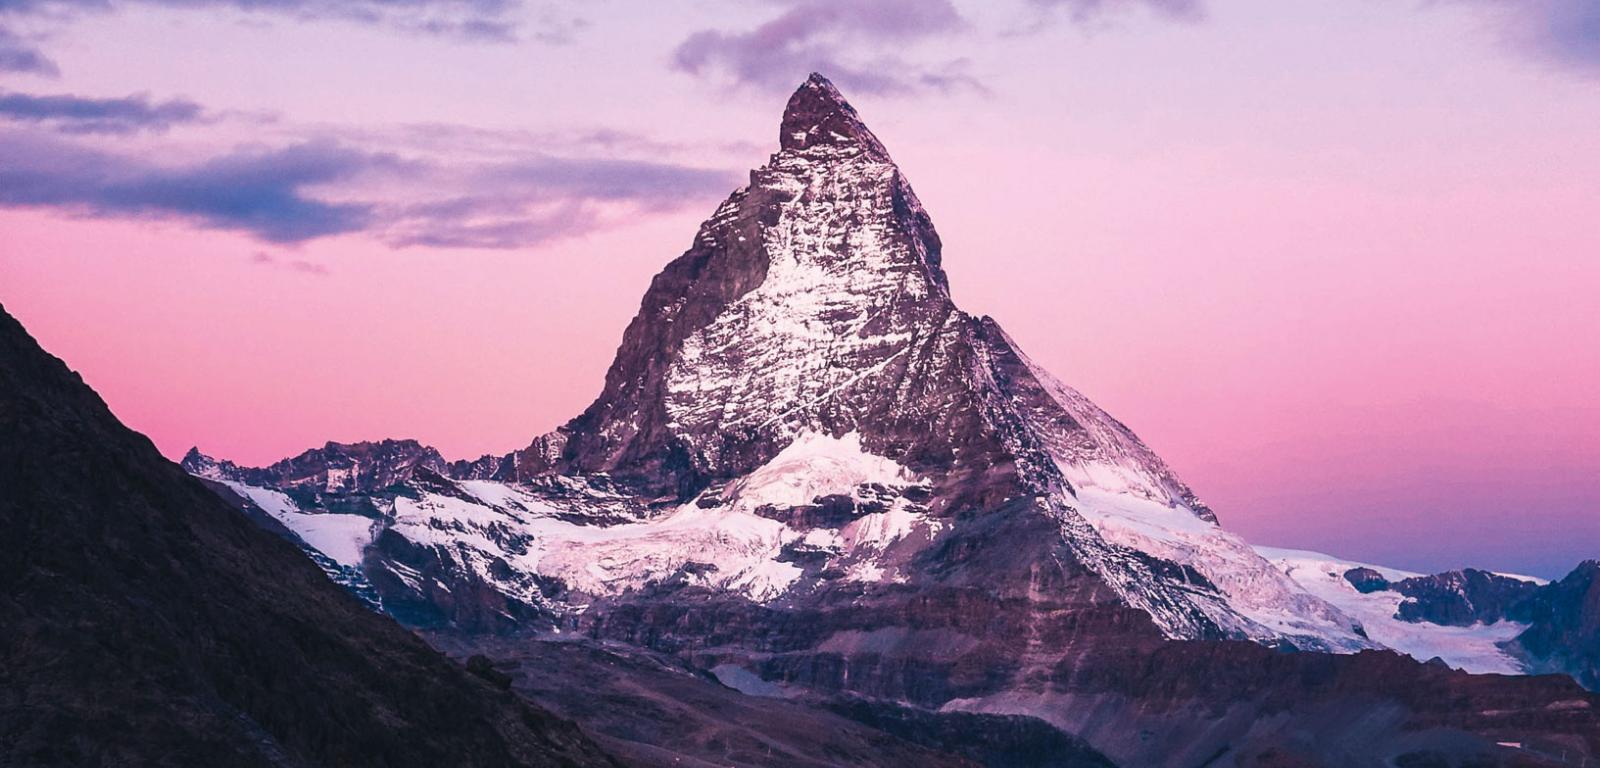 Wschodzące słońce oświetla wyniosłą piramidę Matterhornu, uważanego za najpiękniejszą górę Alp.